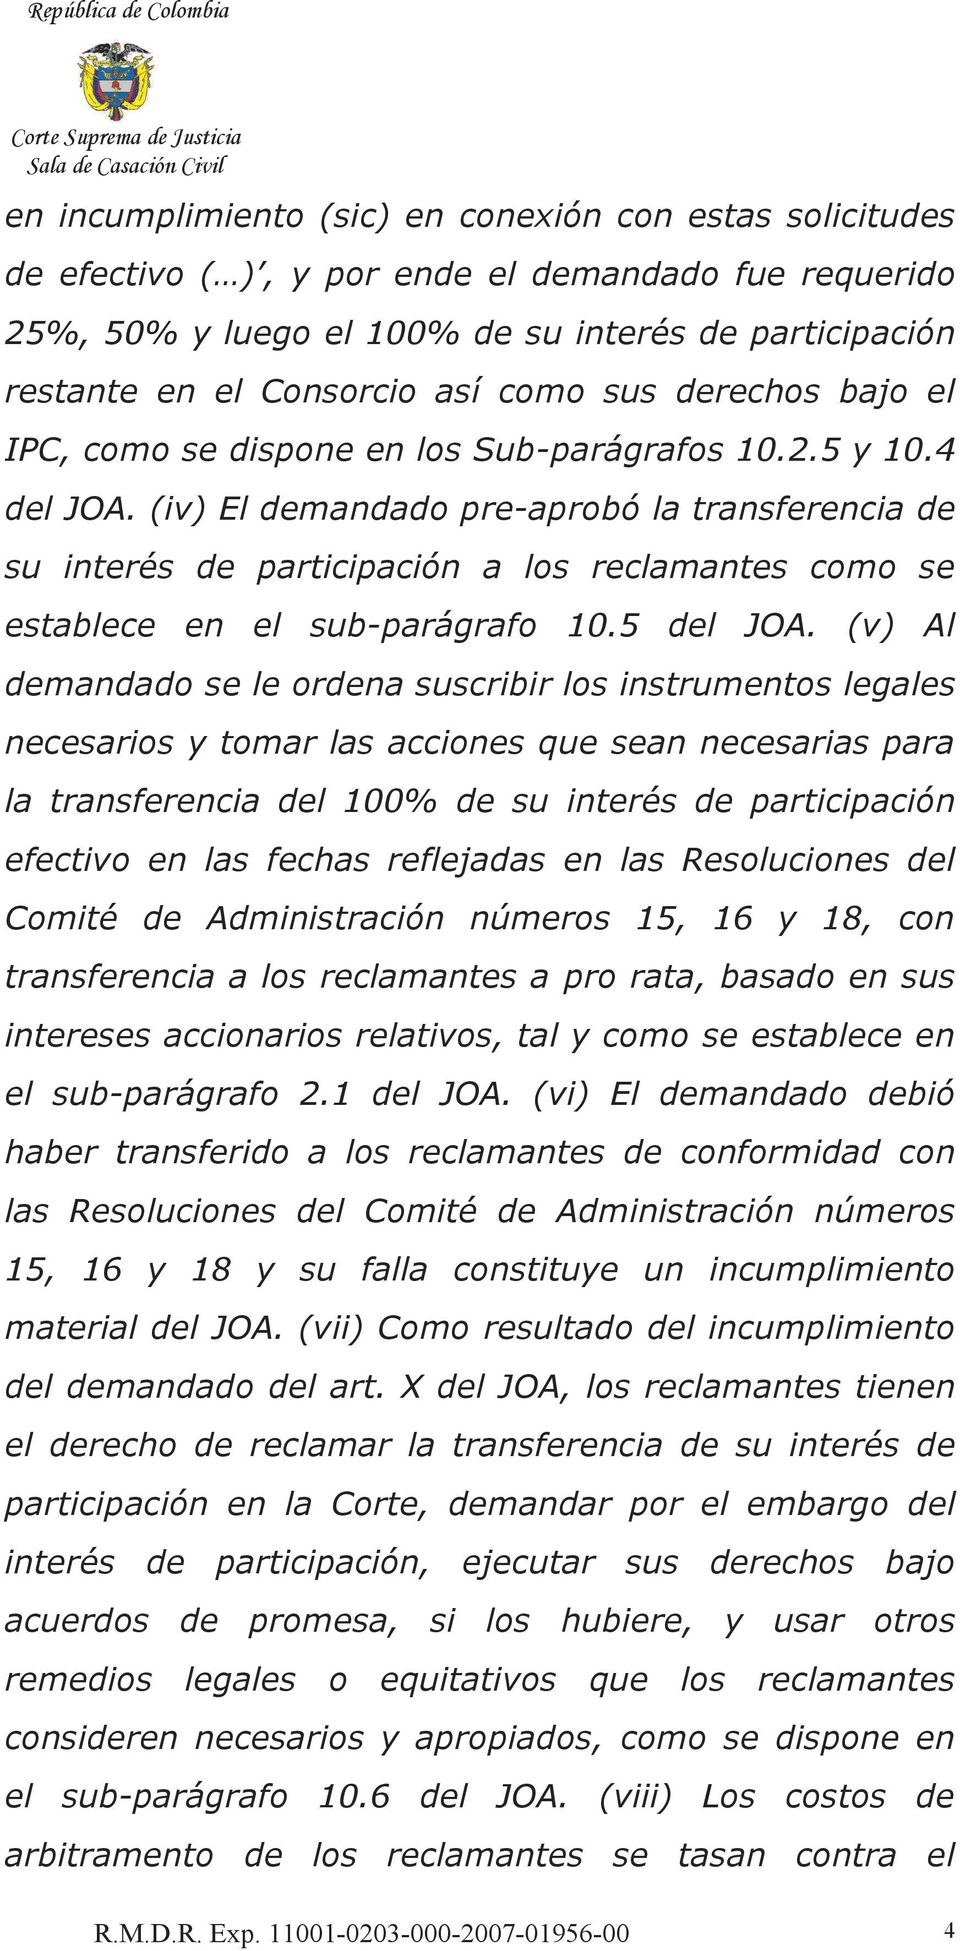 (iv) El demandado pre-aprobó la transferencia de su interés de participación a los reclamantes como se establece en el sub-parágrafo 10.5 del JOA.